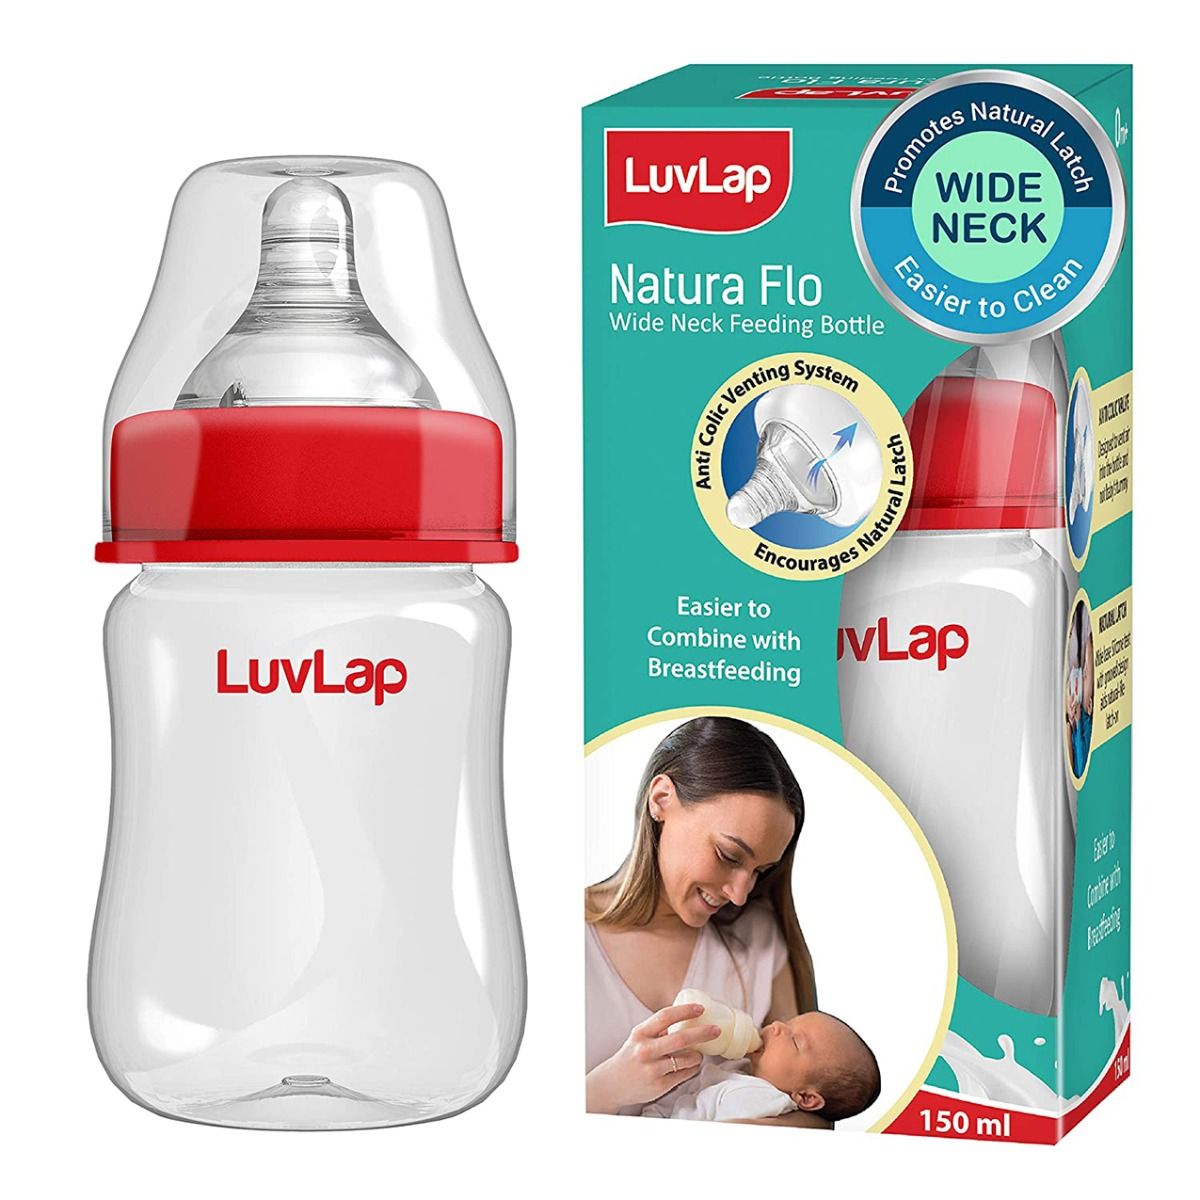 Buy Luvlap Natura Flo Wide Neck Feeding Bottle, 150 ml Online